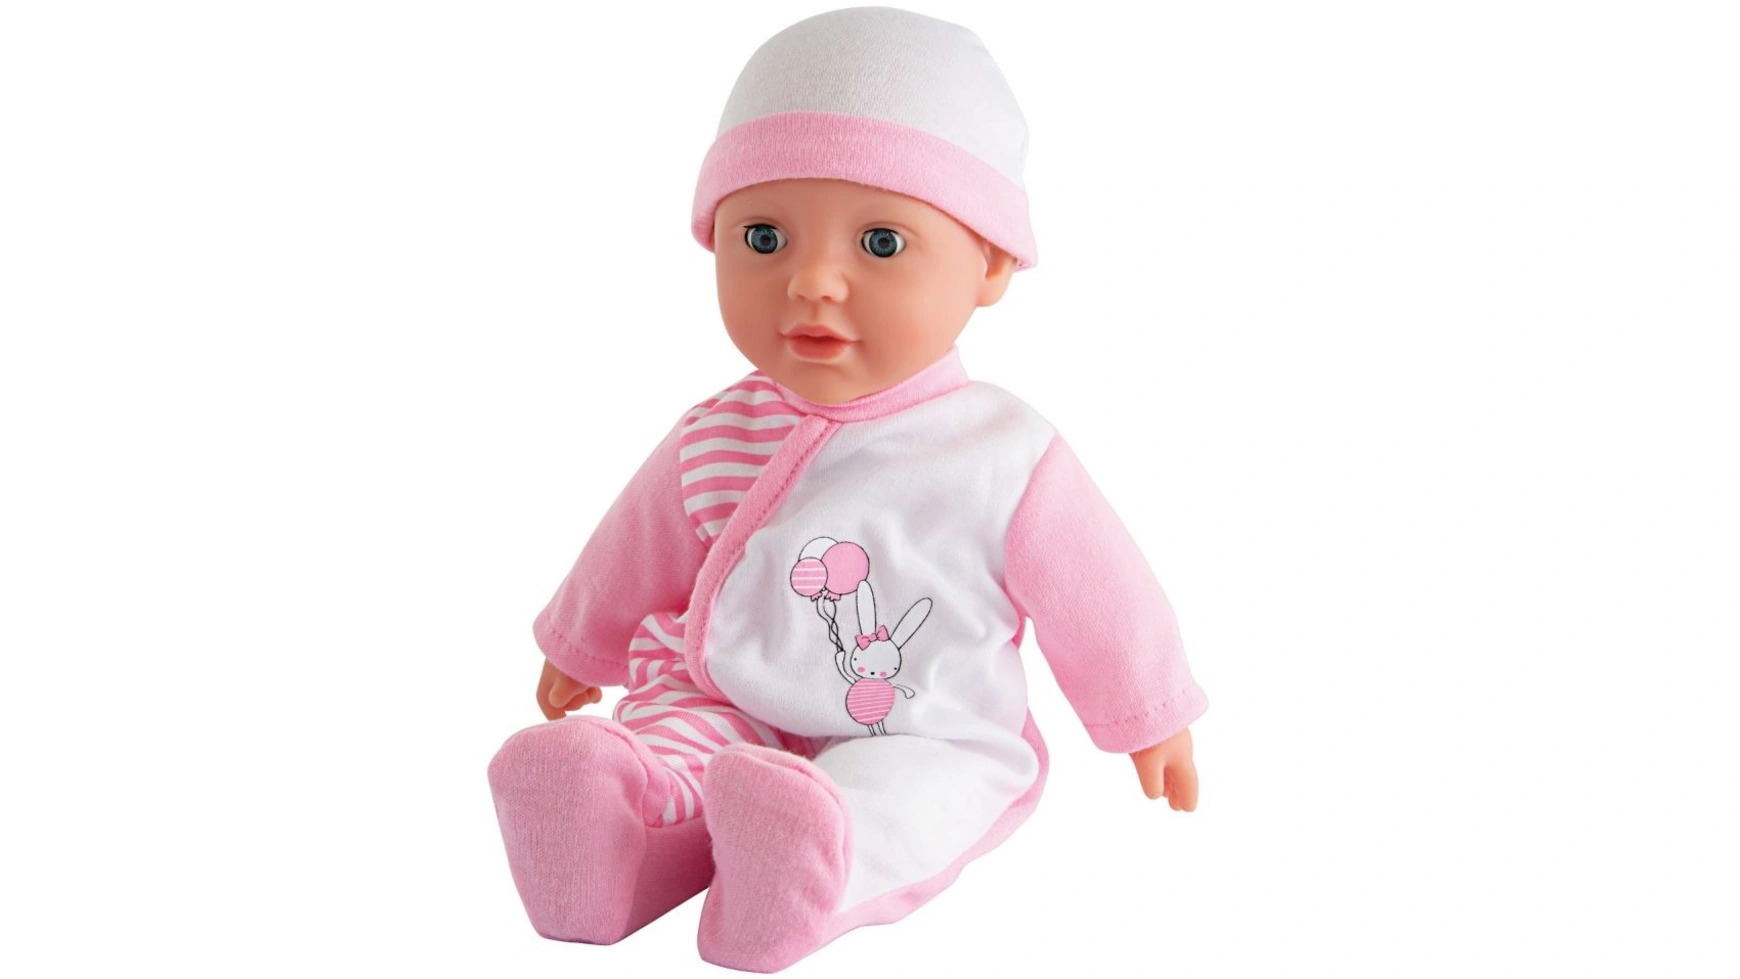 Лаура детский разговор Simba кукла arias elegance мягкое тело с пластиковым каркасом внутри в одежде т13742